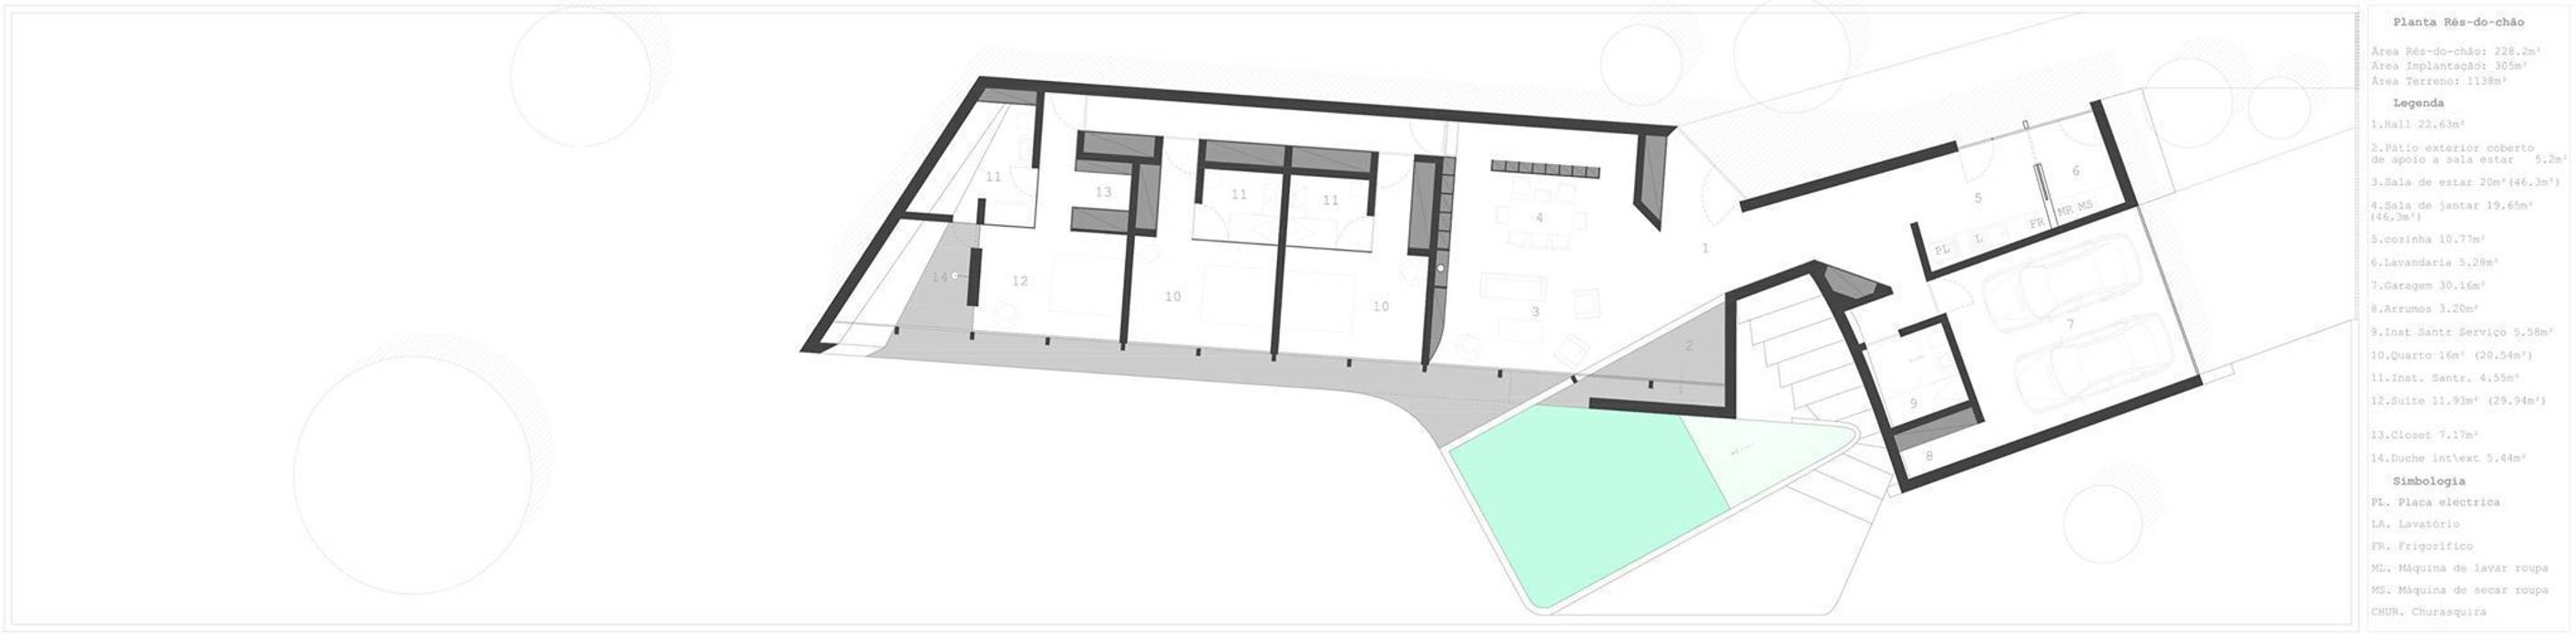 PT - Planta de Rés-do-Chão, EN - Floor Plan, FR - Plan Niveau 0 Office of Feeling Architecture, Lda